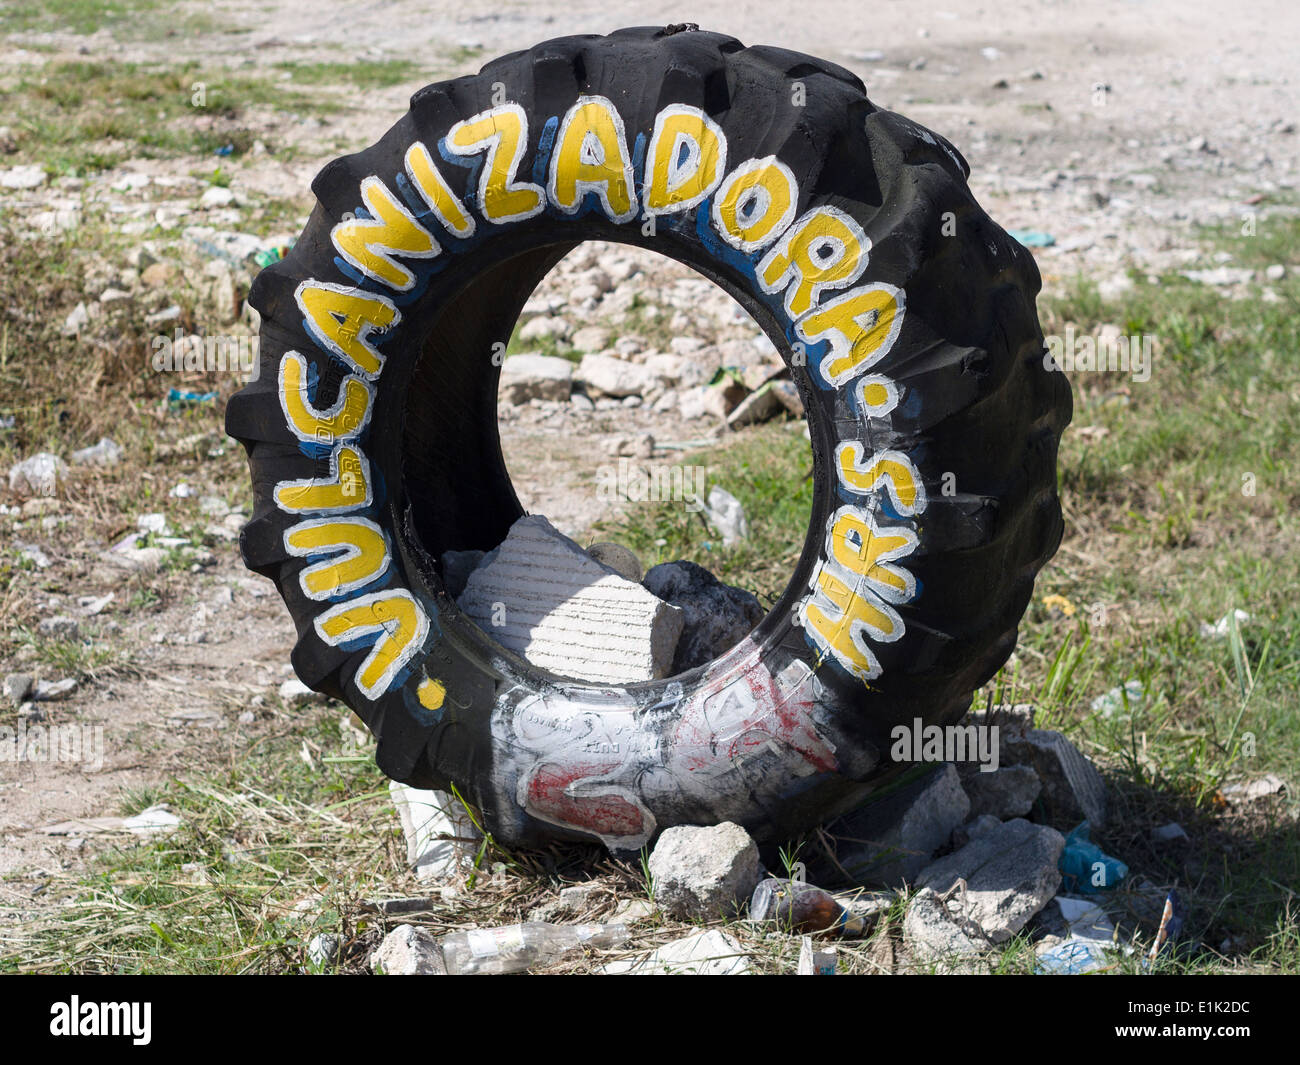 Segno pubblicità un pneumatico Negozio in Messico. Un pneumatico repair shop utilizza un vecchio pneumatico per il suo segno sul ciglio della strada. Foto Stock